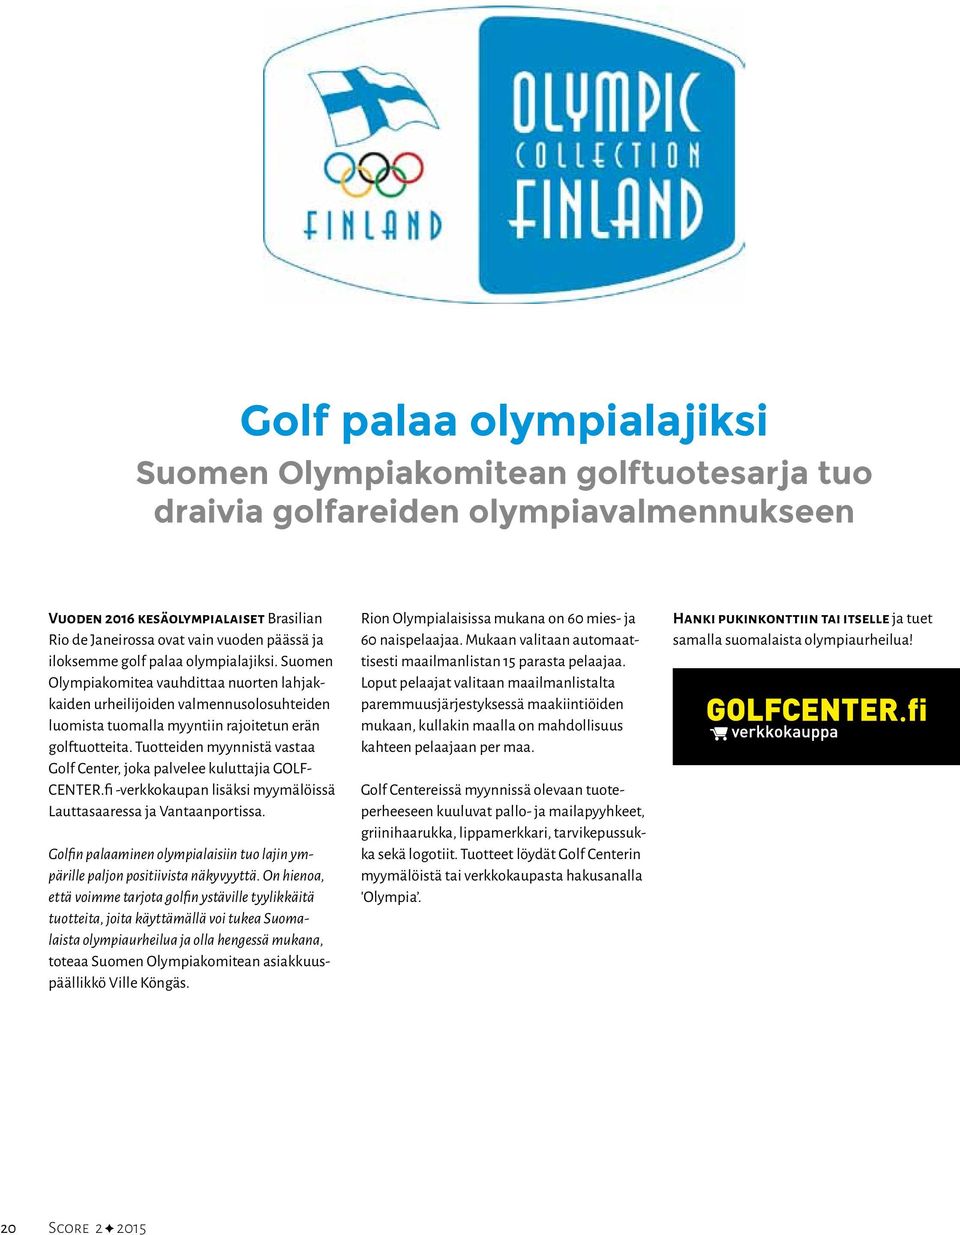 Tuotteiden myynnistä vastaa Golf Center, joka palvelee kuluttajia GOLF- CENTER.fi -verkkokaupan lisäksi myymälöissä Lauttasaaressa ja Vantaanportissa.